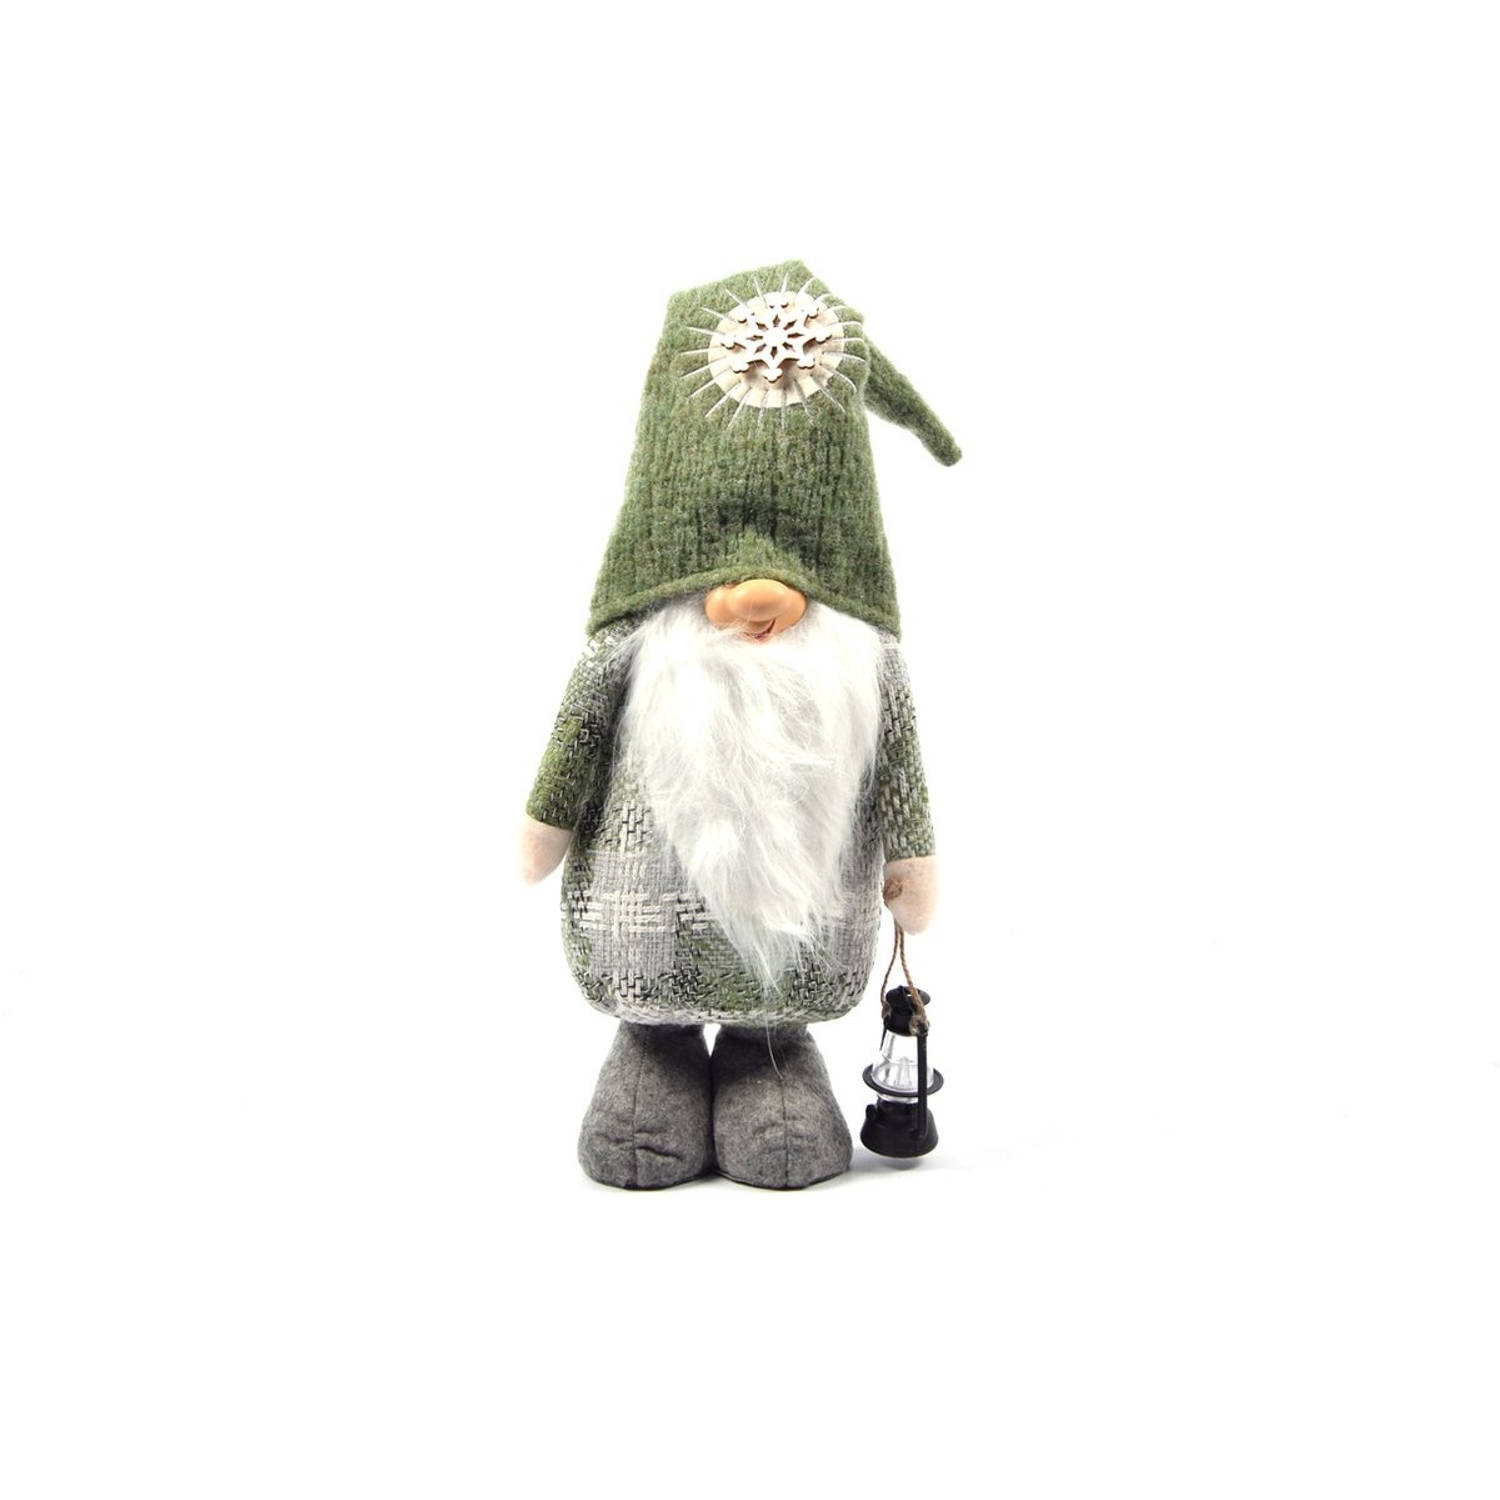 Gnome Staand 50 cm Groen kerstman staande lantaarn Kerstman Dwerg Staand Puntmuts Kerst kabouter Gevuld met